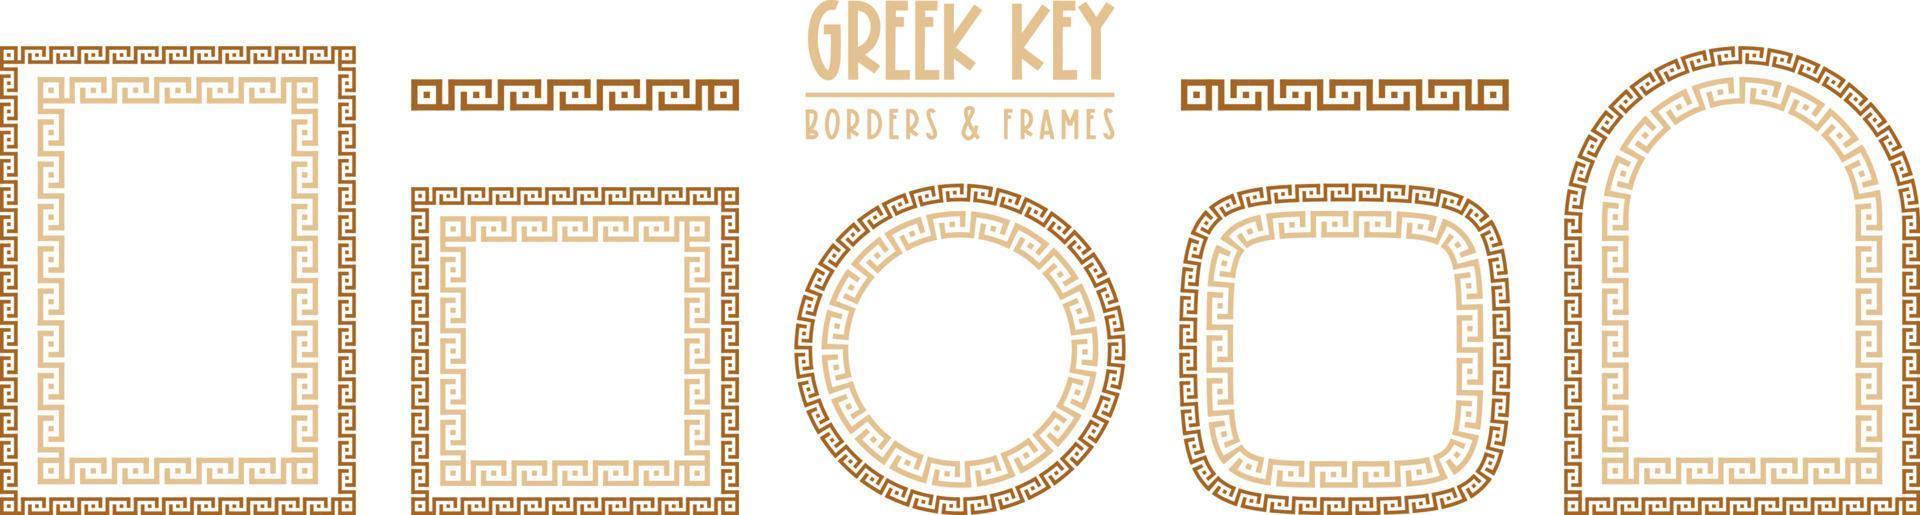 collection d'images clés et de bordures grecques. ancien méandre décoratif vecteur